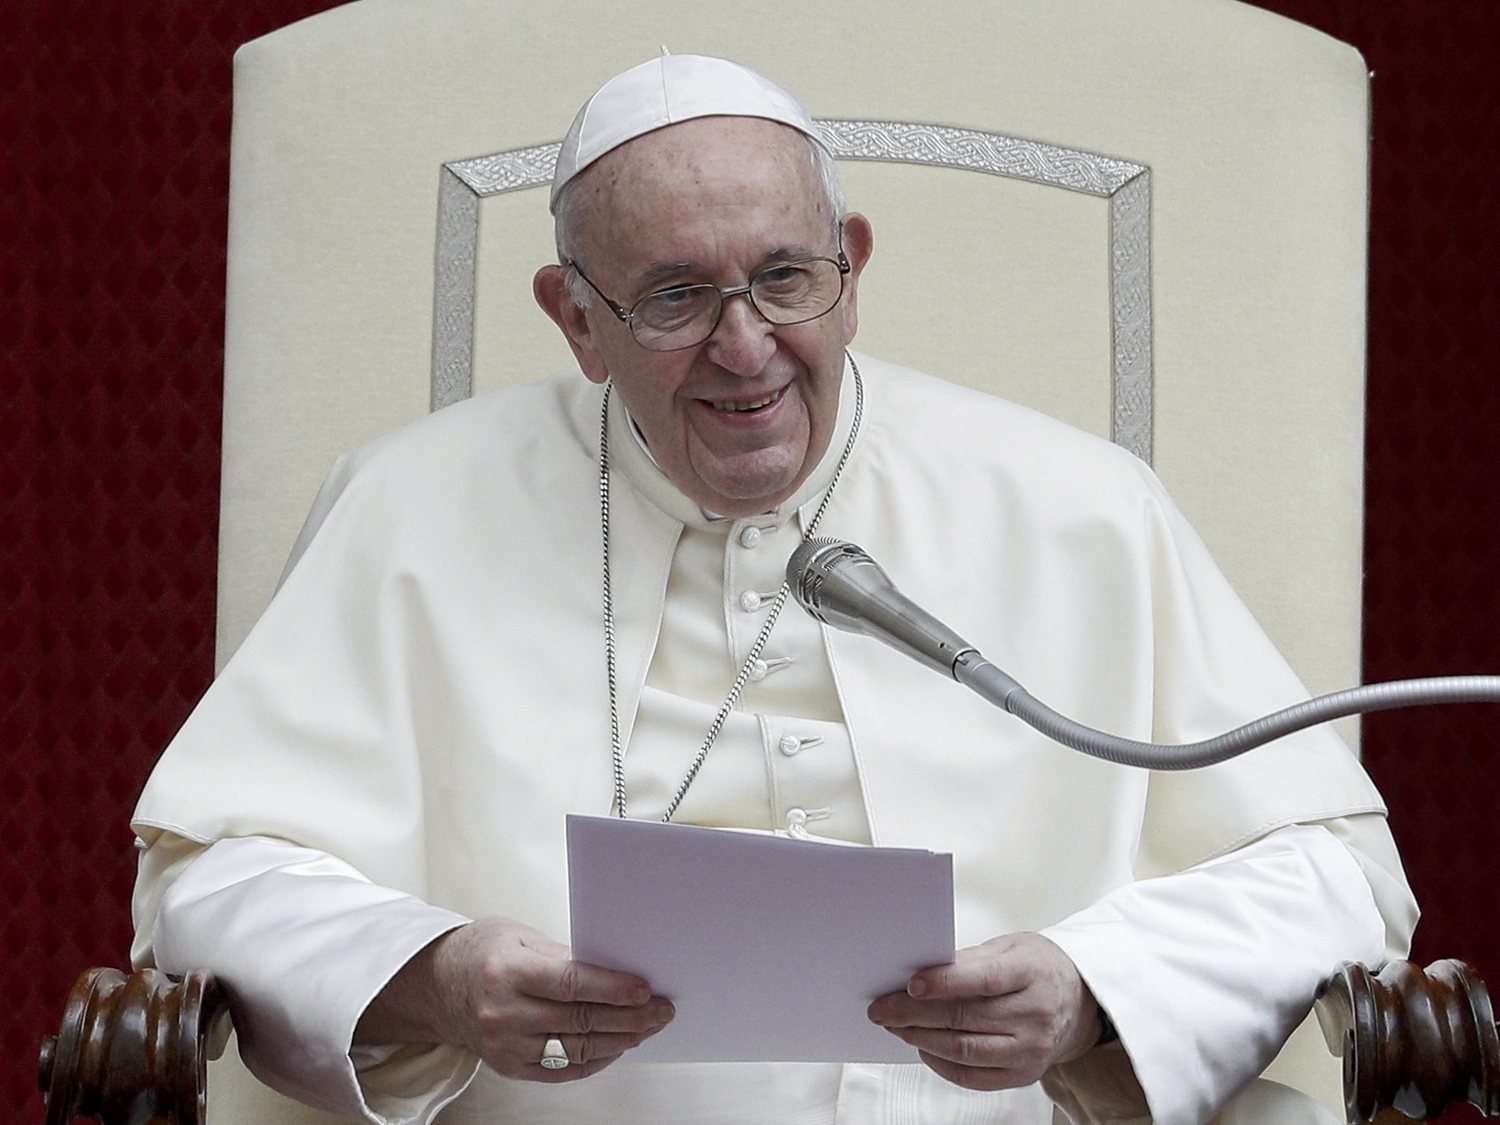 El Papa defiende las uniones civiles homosexuales: "Tienen derecho a estar en familia"